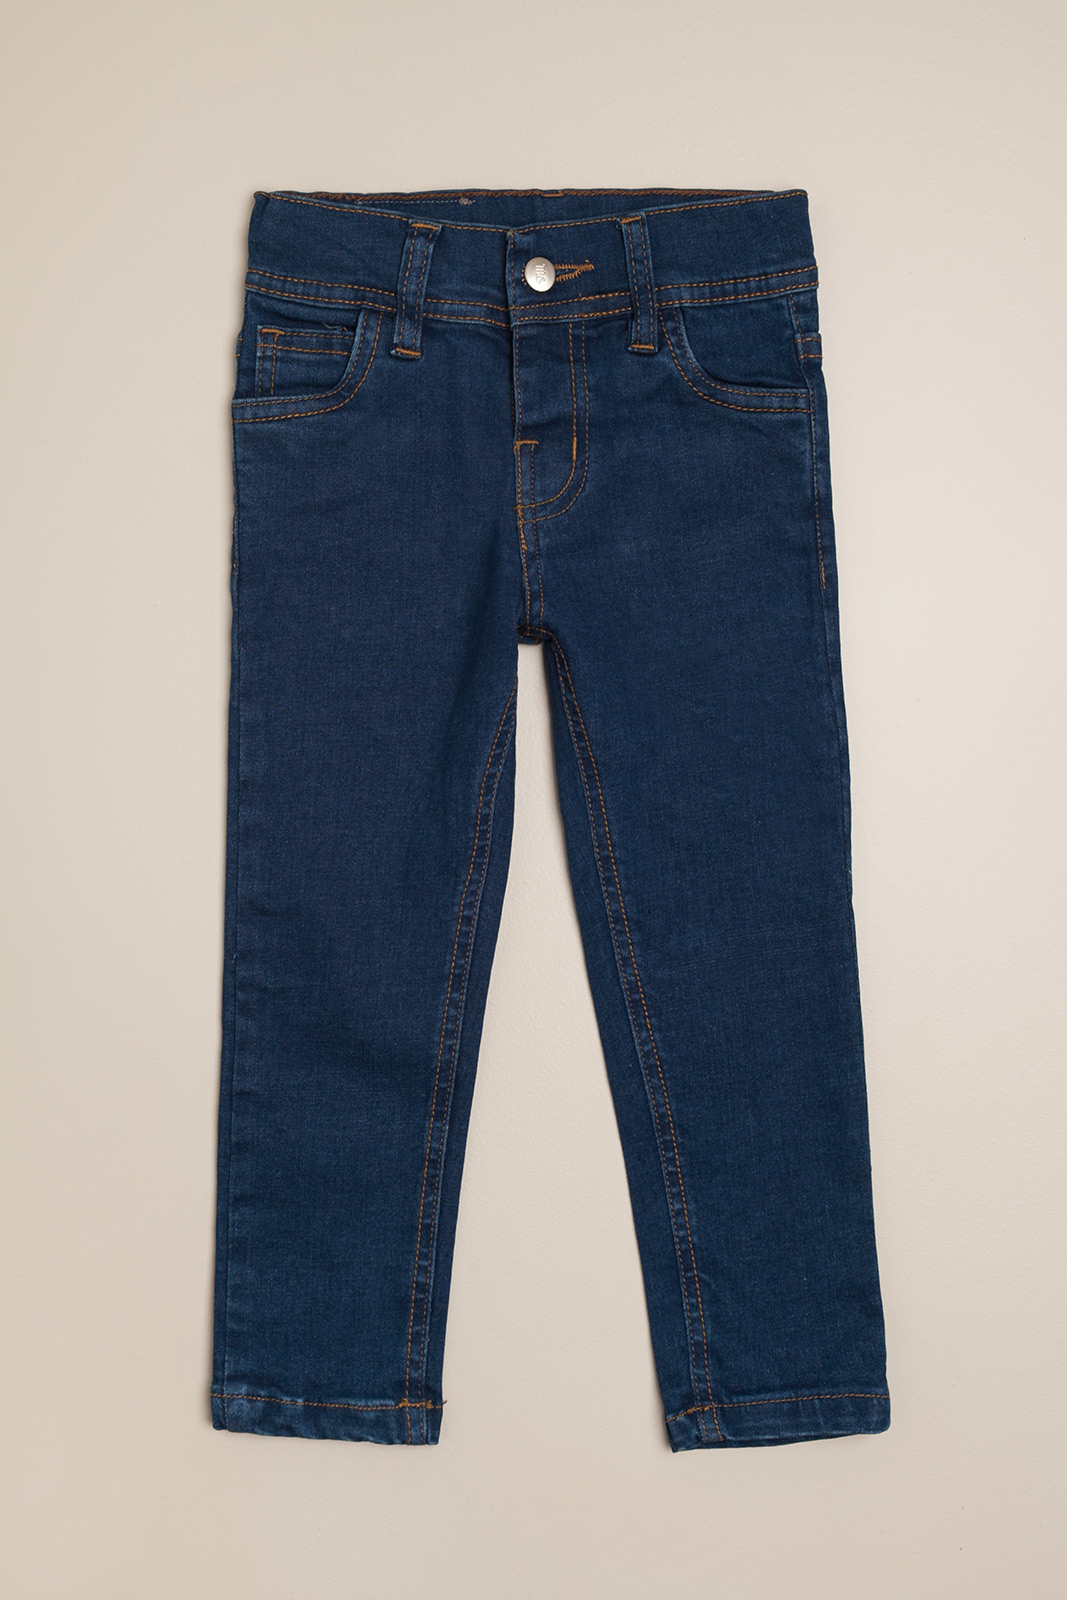 Pantalon de jeans clasico azul